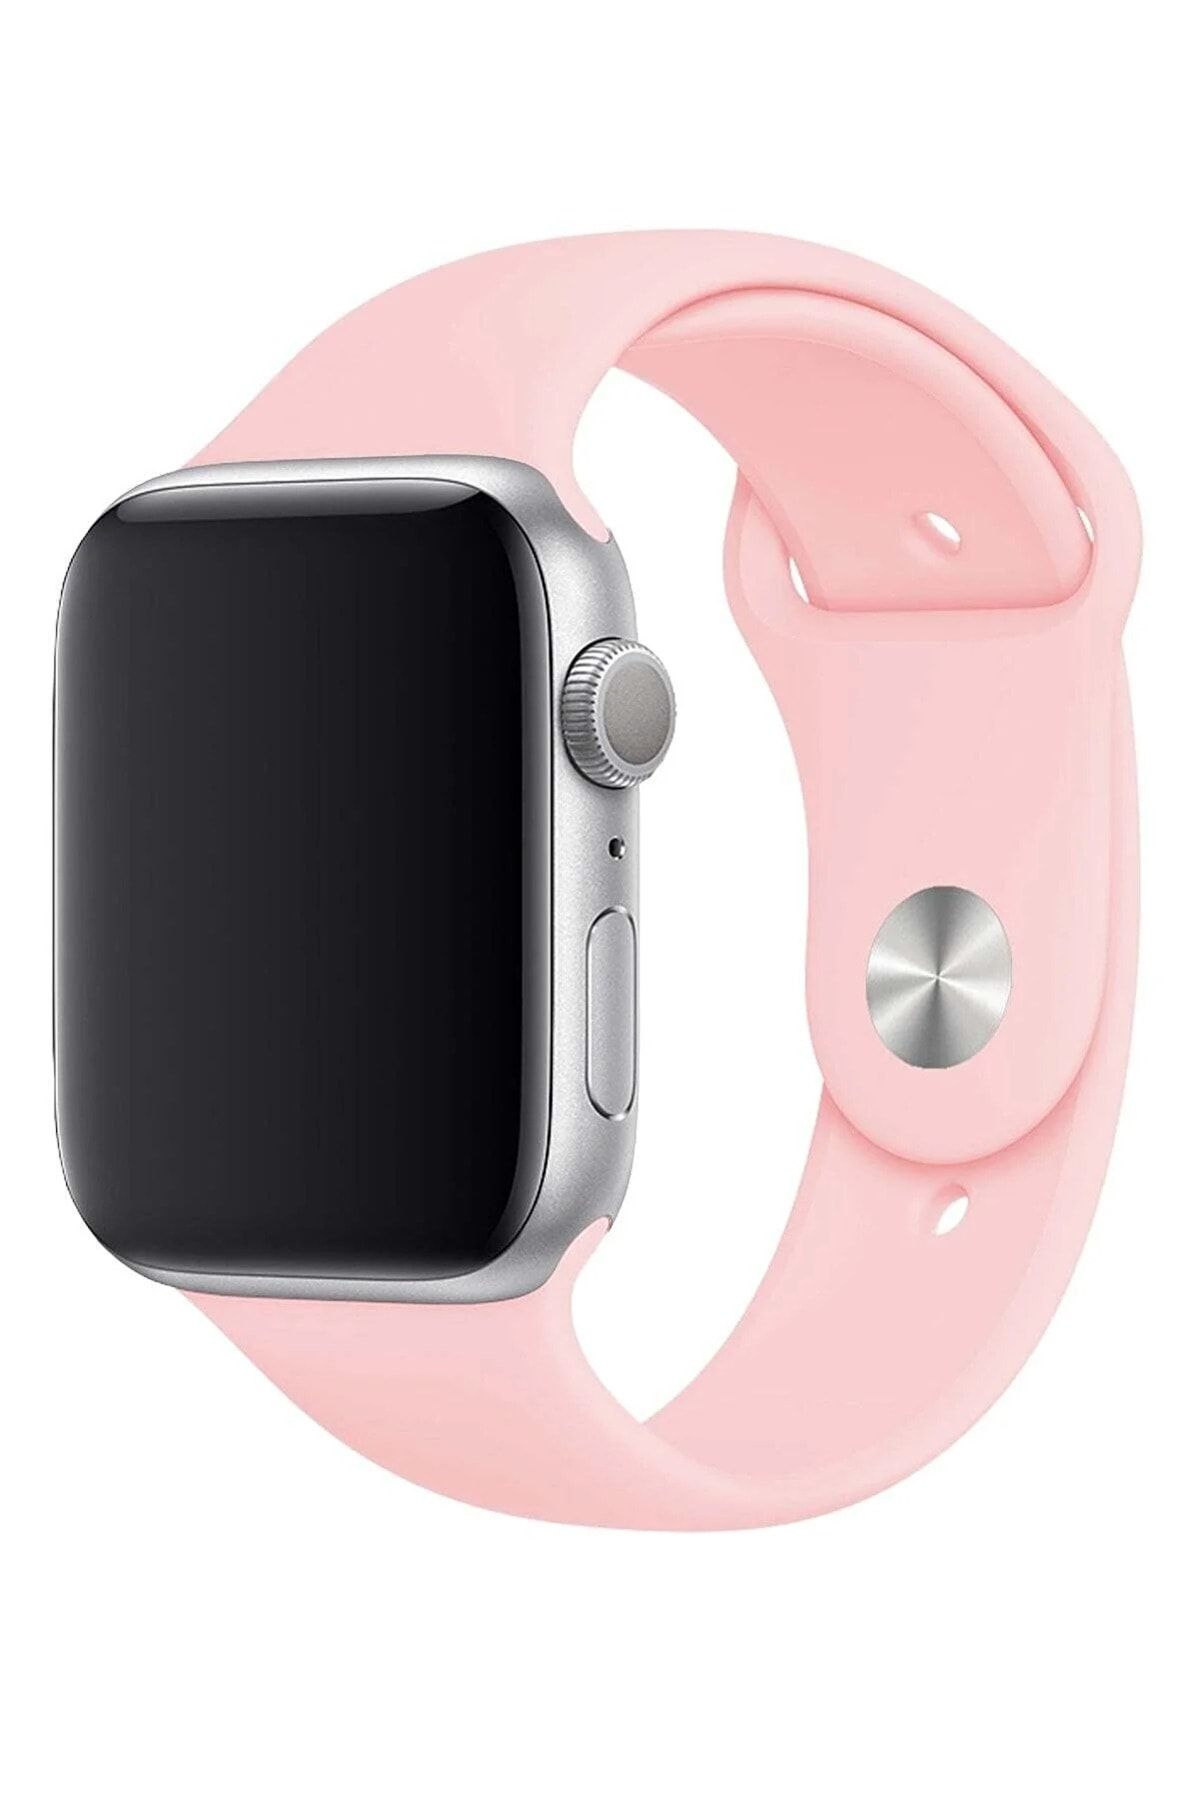 Ремешок для часов смарт вотч. Ремешки для Эппл вотч 7. Ремешок для Apple watch 44mm. Ремешок для Эппл вотч силиконовый. Ремешок силиконовый на Эппл вотч 7.